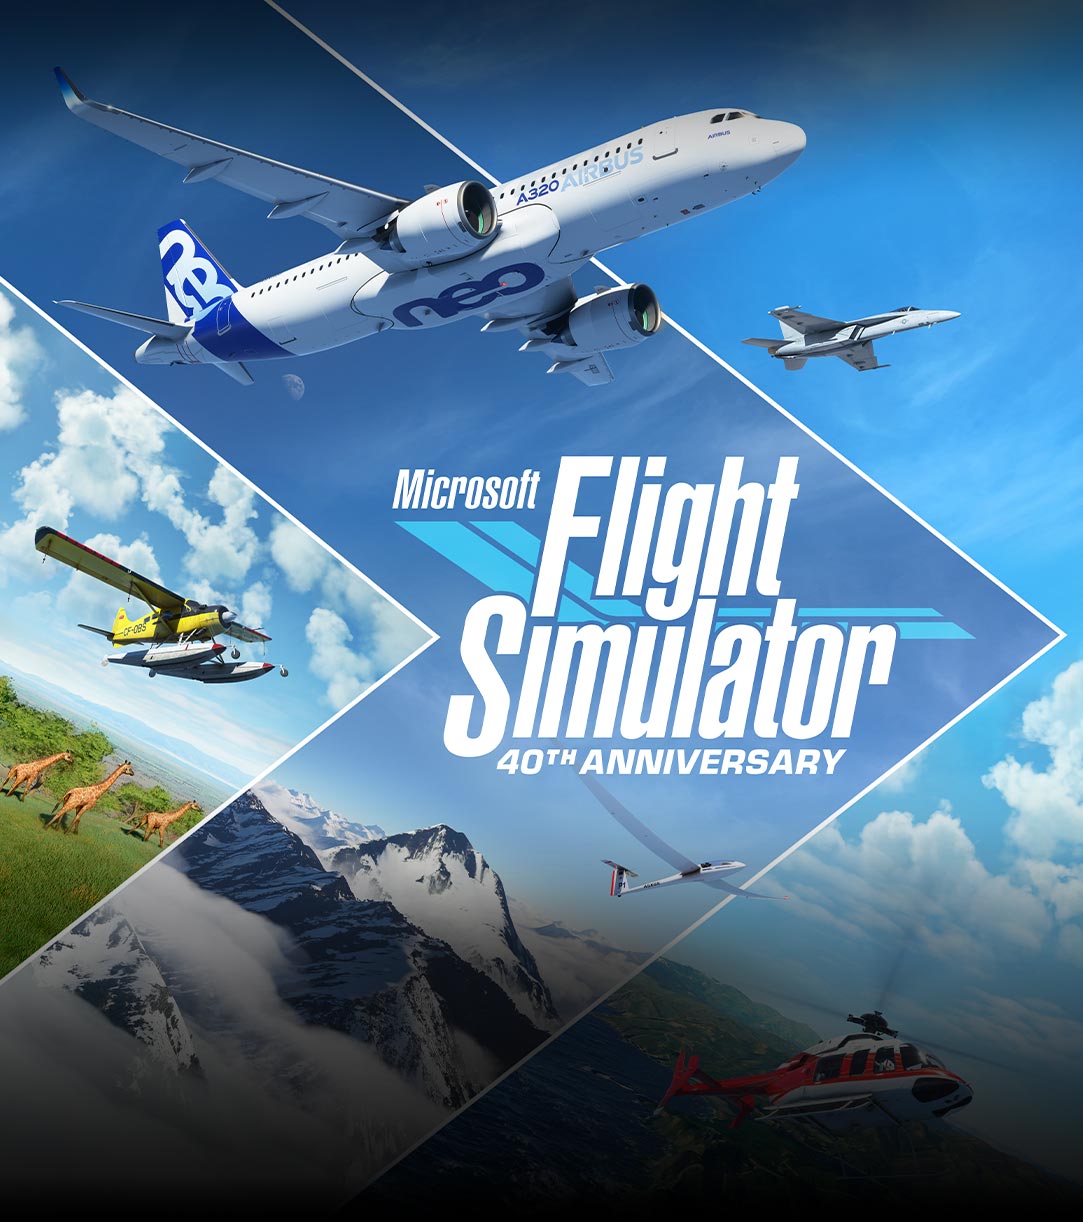 Logotipo del 40 aniversario de Microsoft Flight Simulator, aviones y escenas de diferentes partes del mundo